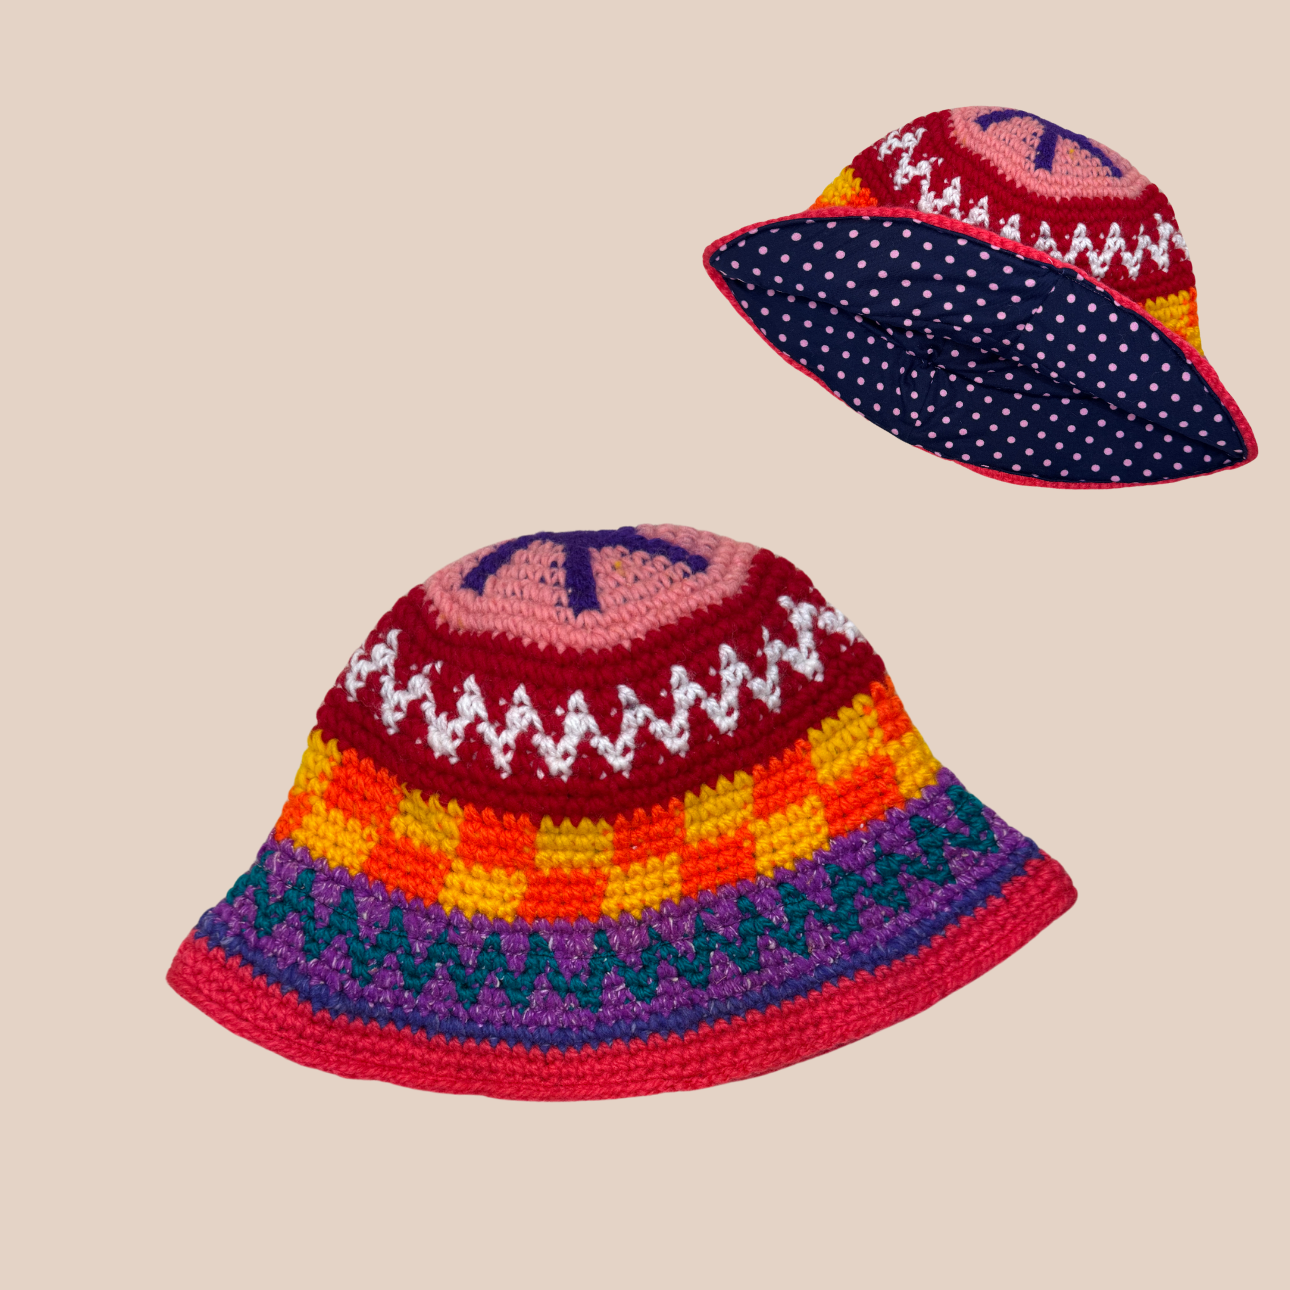 Un bucket hat crocheté en laine et acrylique, arborant des couleurs vives et audacieuses, doublure pois